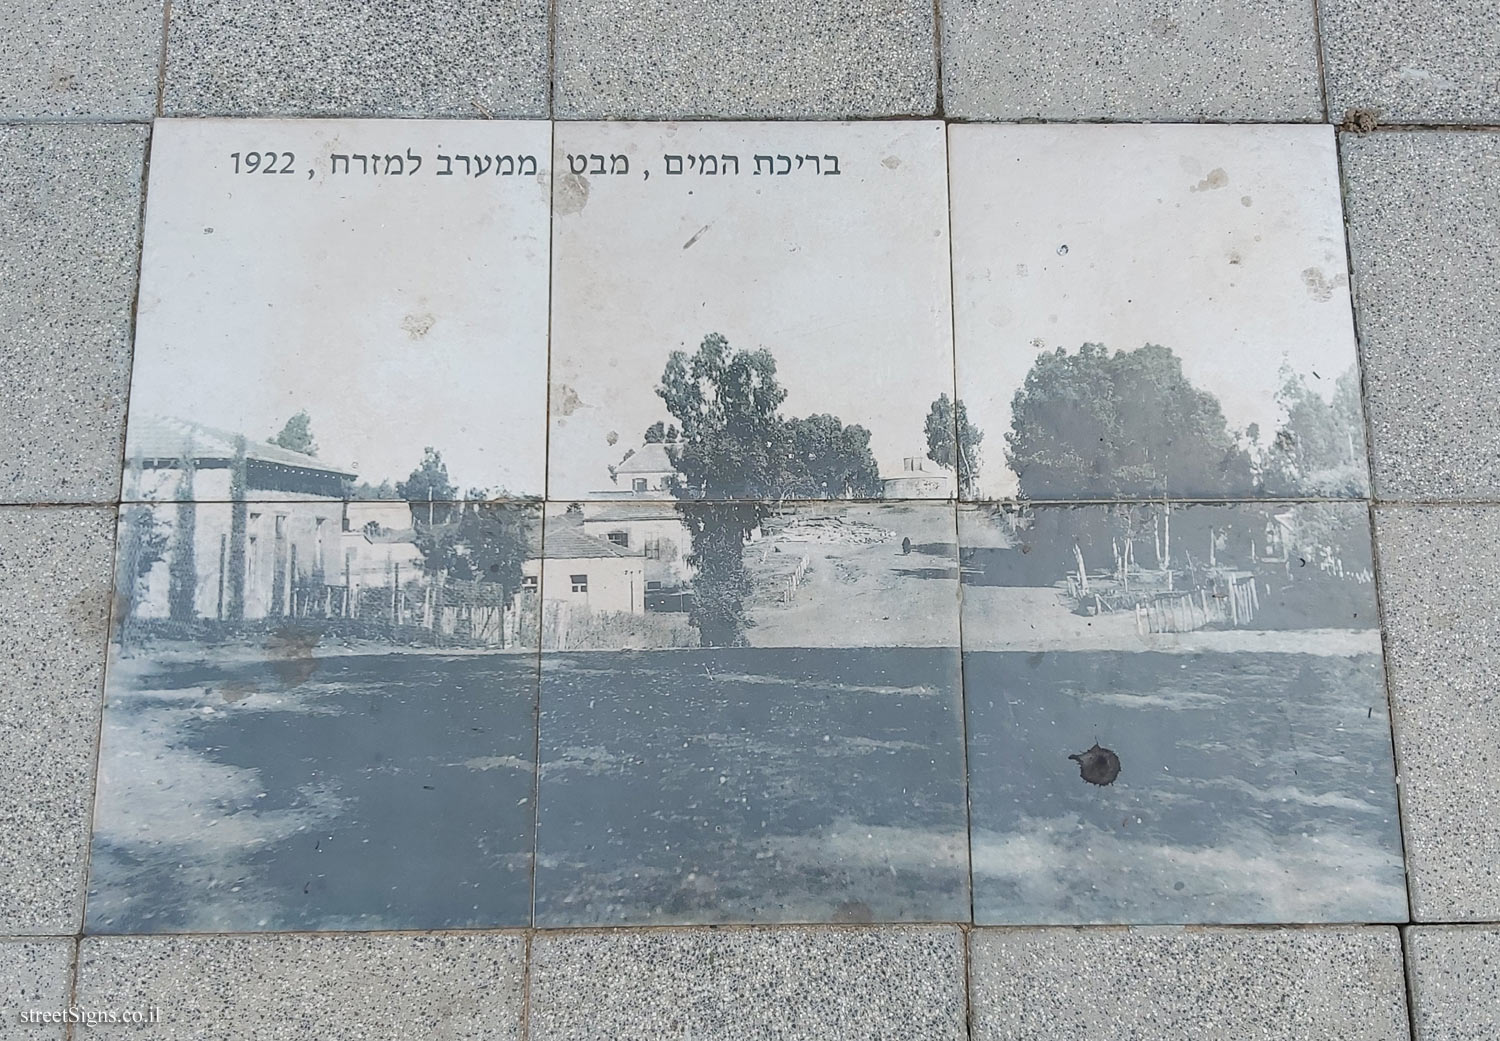 Hadera - Historical photos - The water pool